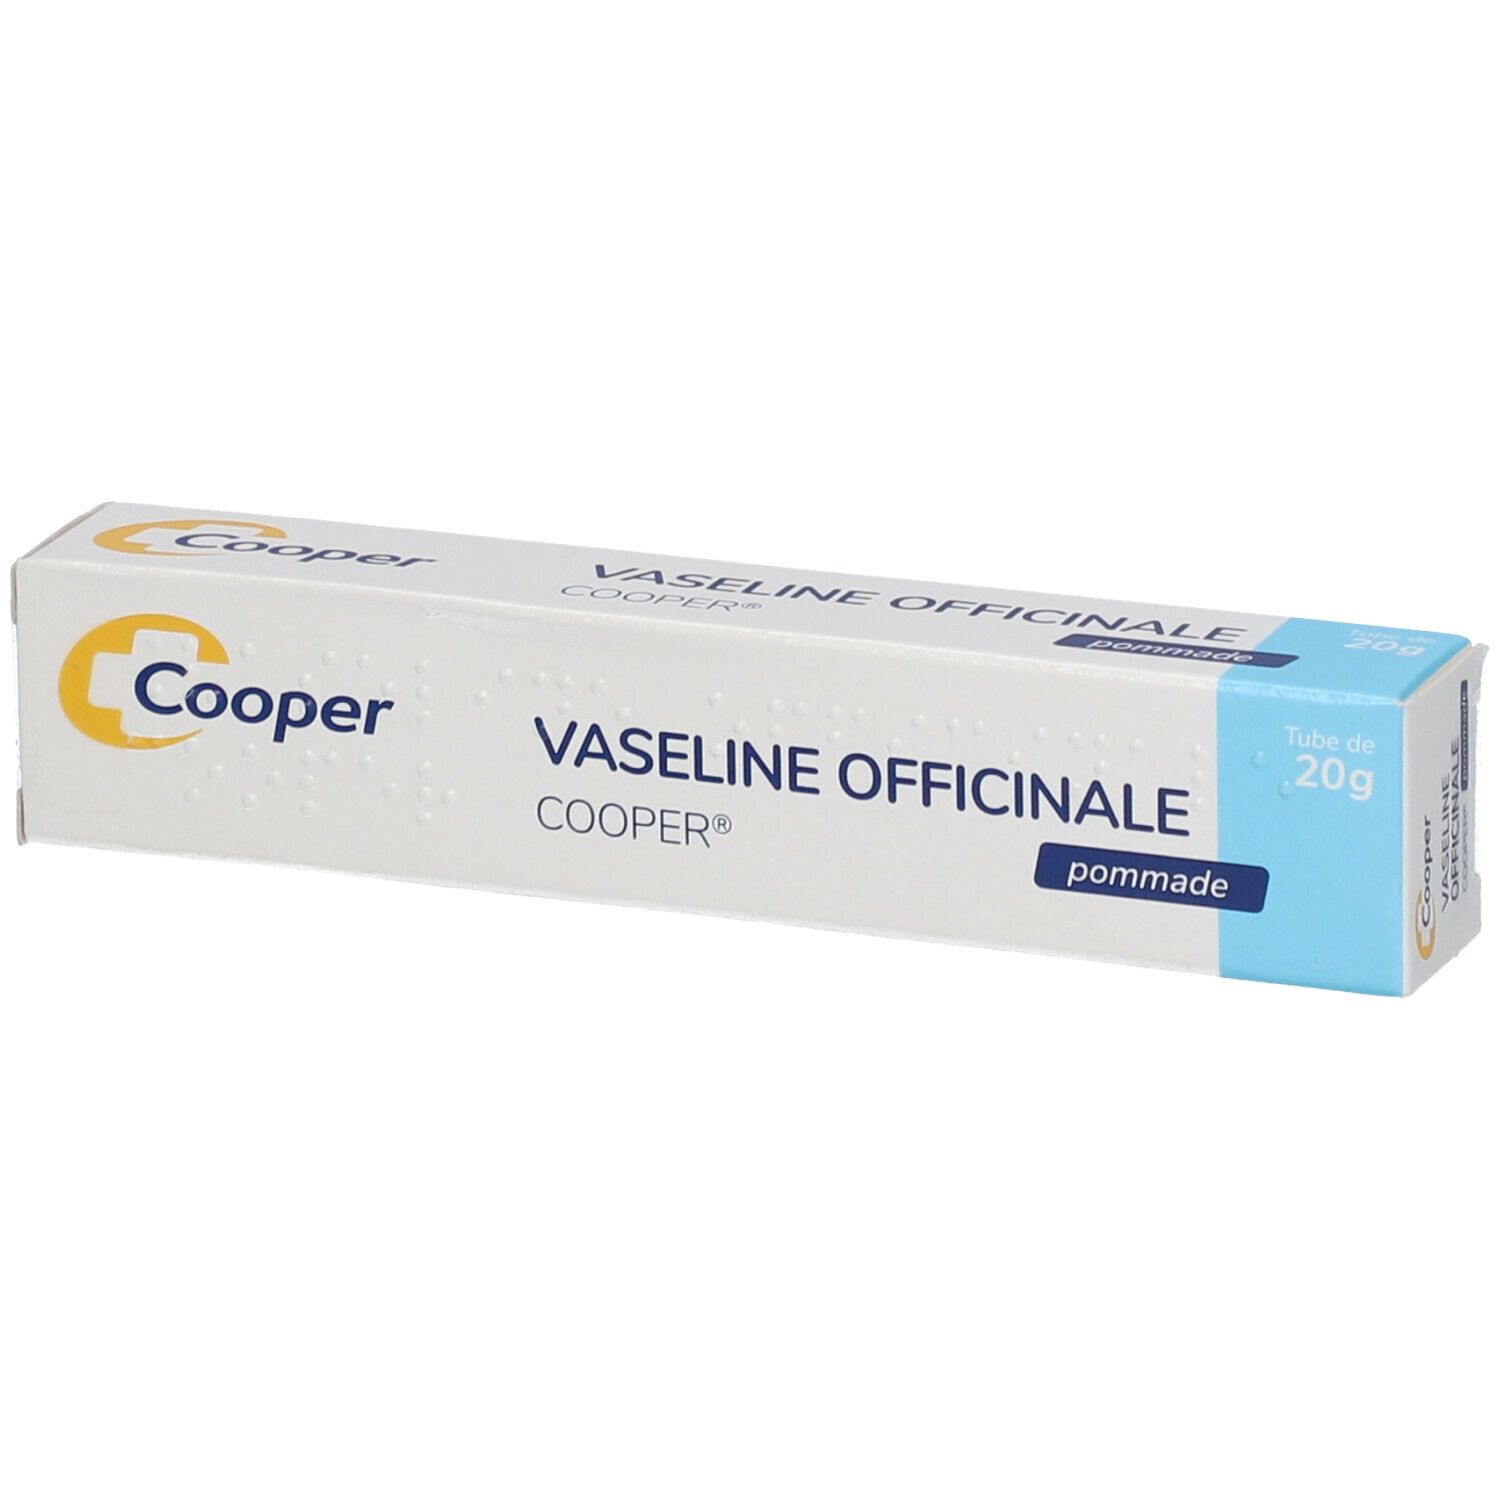 Cooper Vaseline Officinale